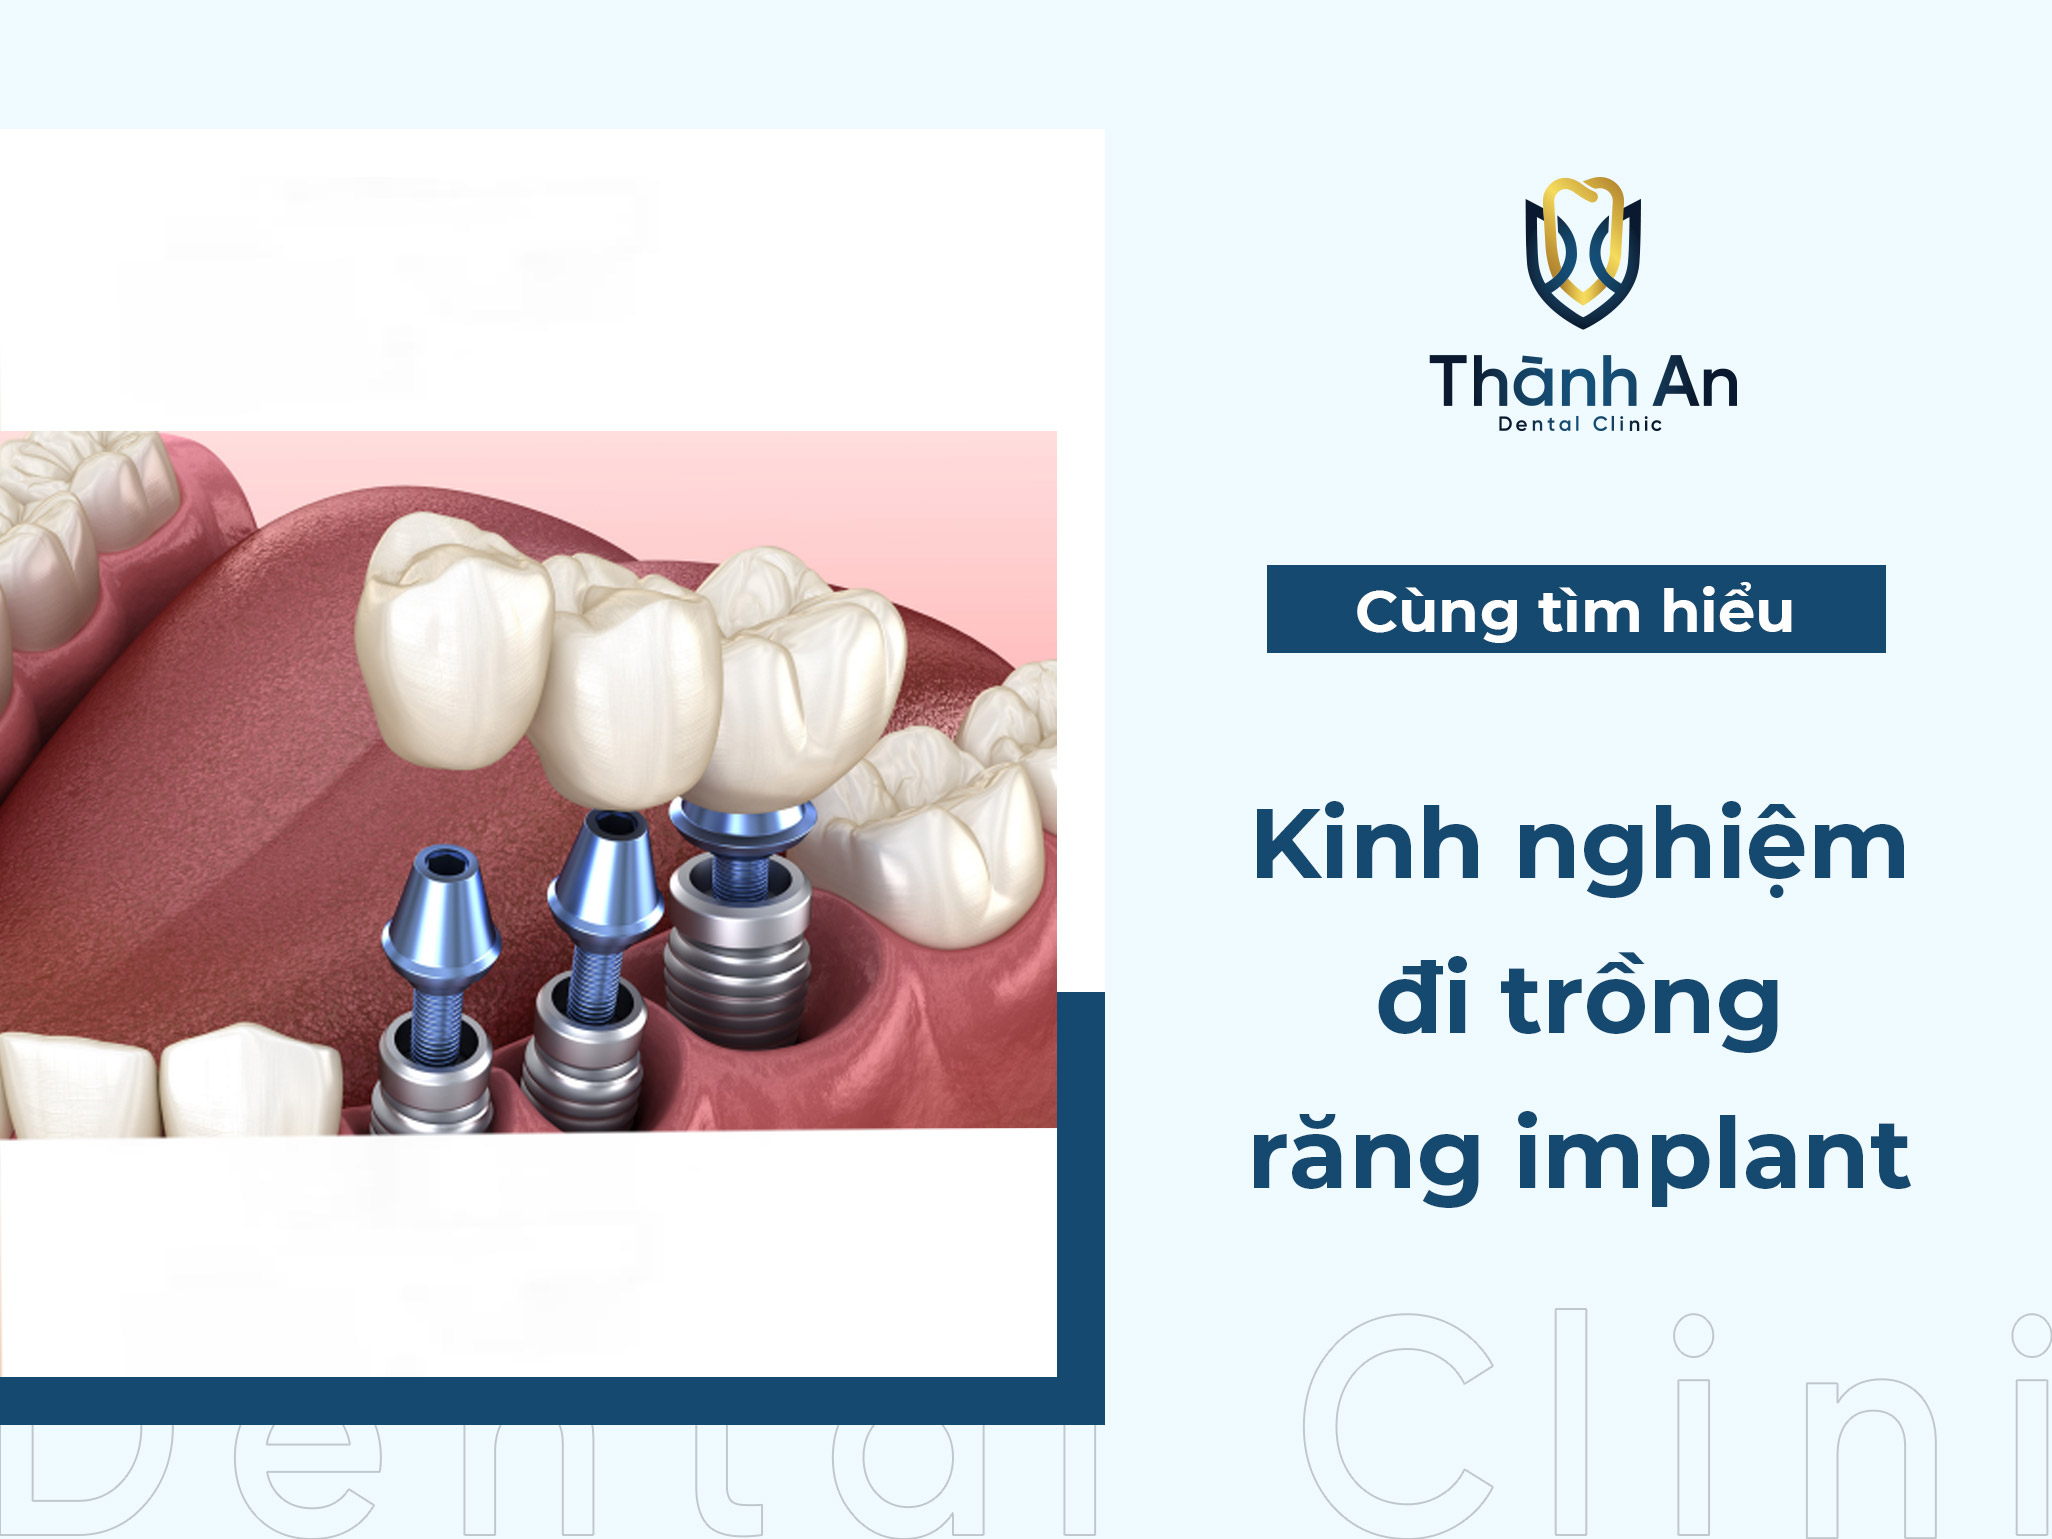 Kinh nghiệm đi trồng răng implant HIỆU QUẢ - AN TOÀN, bạn đã biết